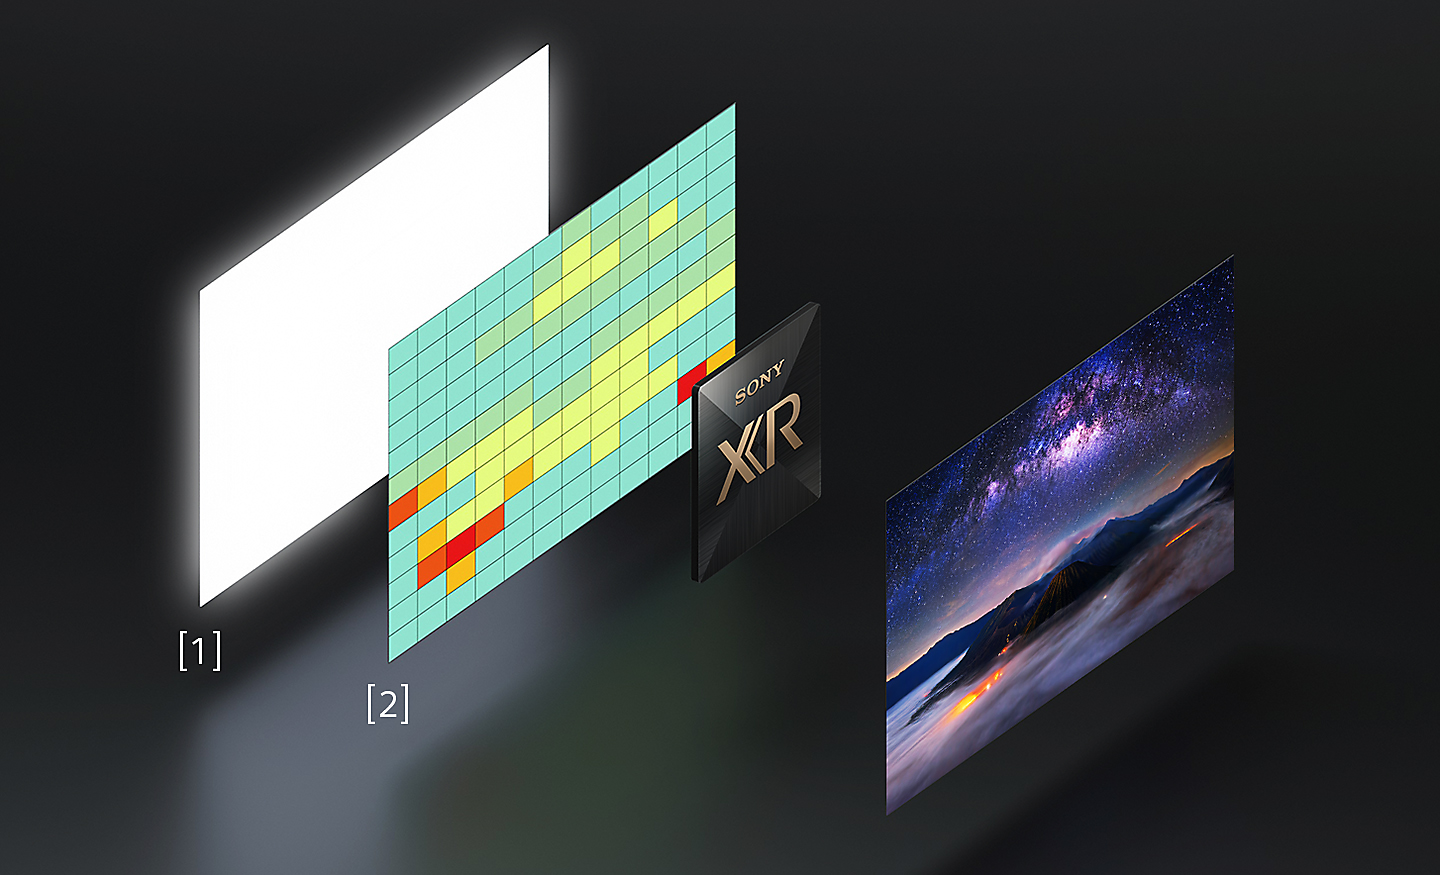 رسم يعرض صورًا بزاوية للوحة الإضاءة العالية ورسم خرائط توزيع درجة الحرارة على اليسار، وصورة بزاوية لشاشة BRAVIA مليئة بالألوان على اليمين